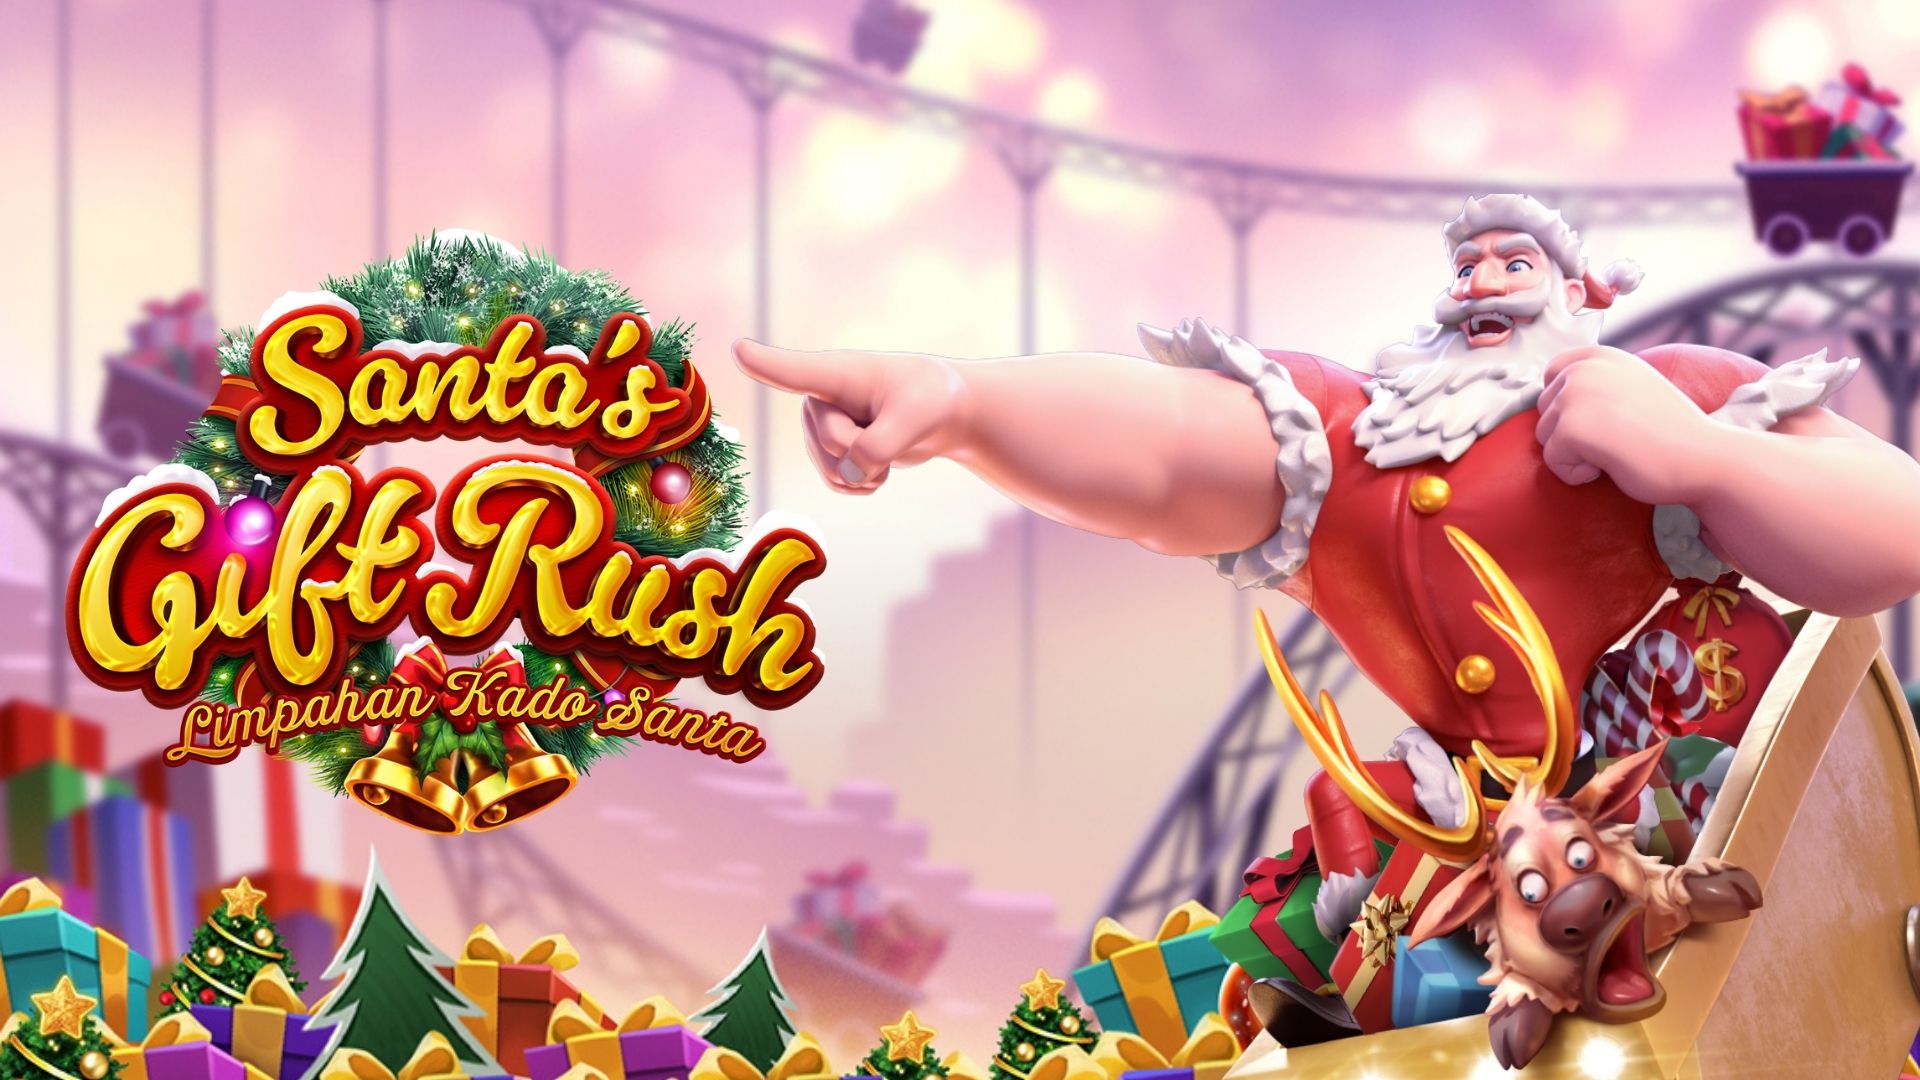 slot santa's gift rush